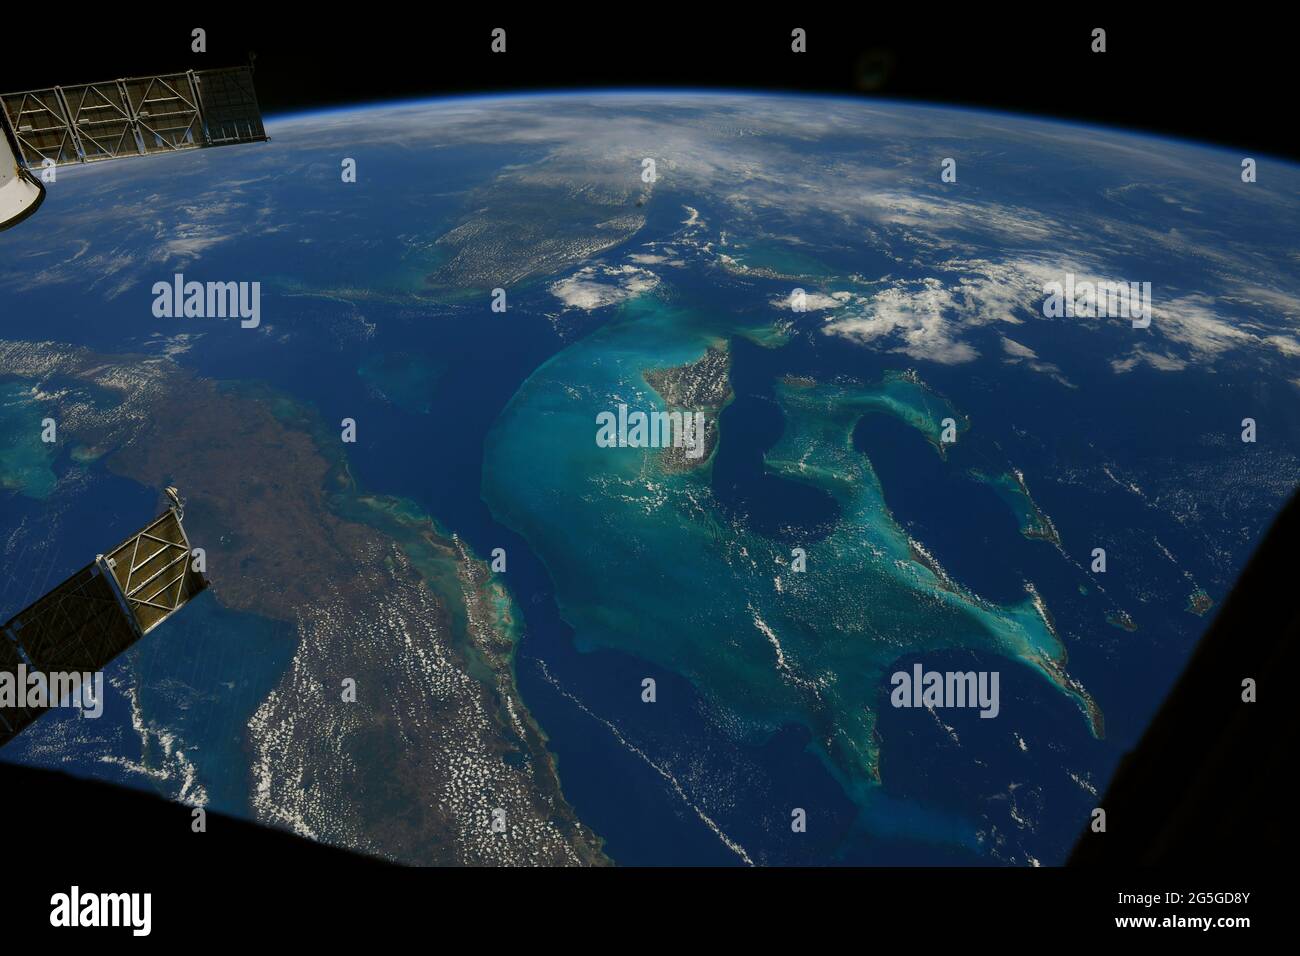 AN BORD DER INTERNATIONALEN RAUMSTATION - 02. Mai 2021 - von der Internationalen Raumstation aus hat man einen atemberaubenden Blick auf Grand Bahama und die Insel Kuba. F Stockfoto